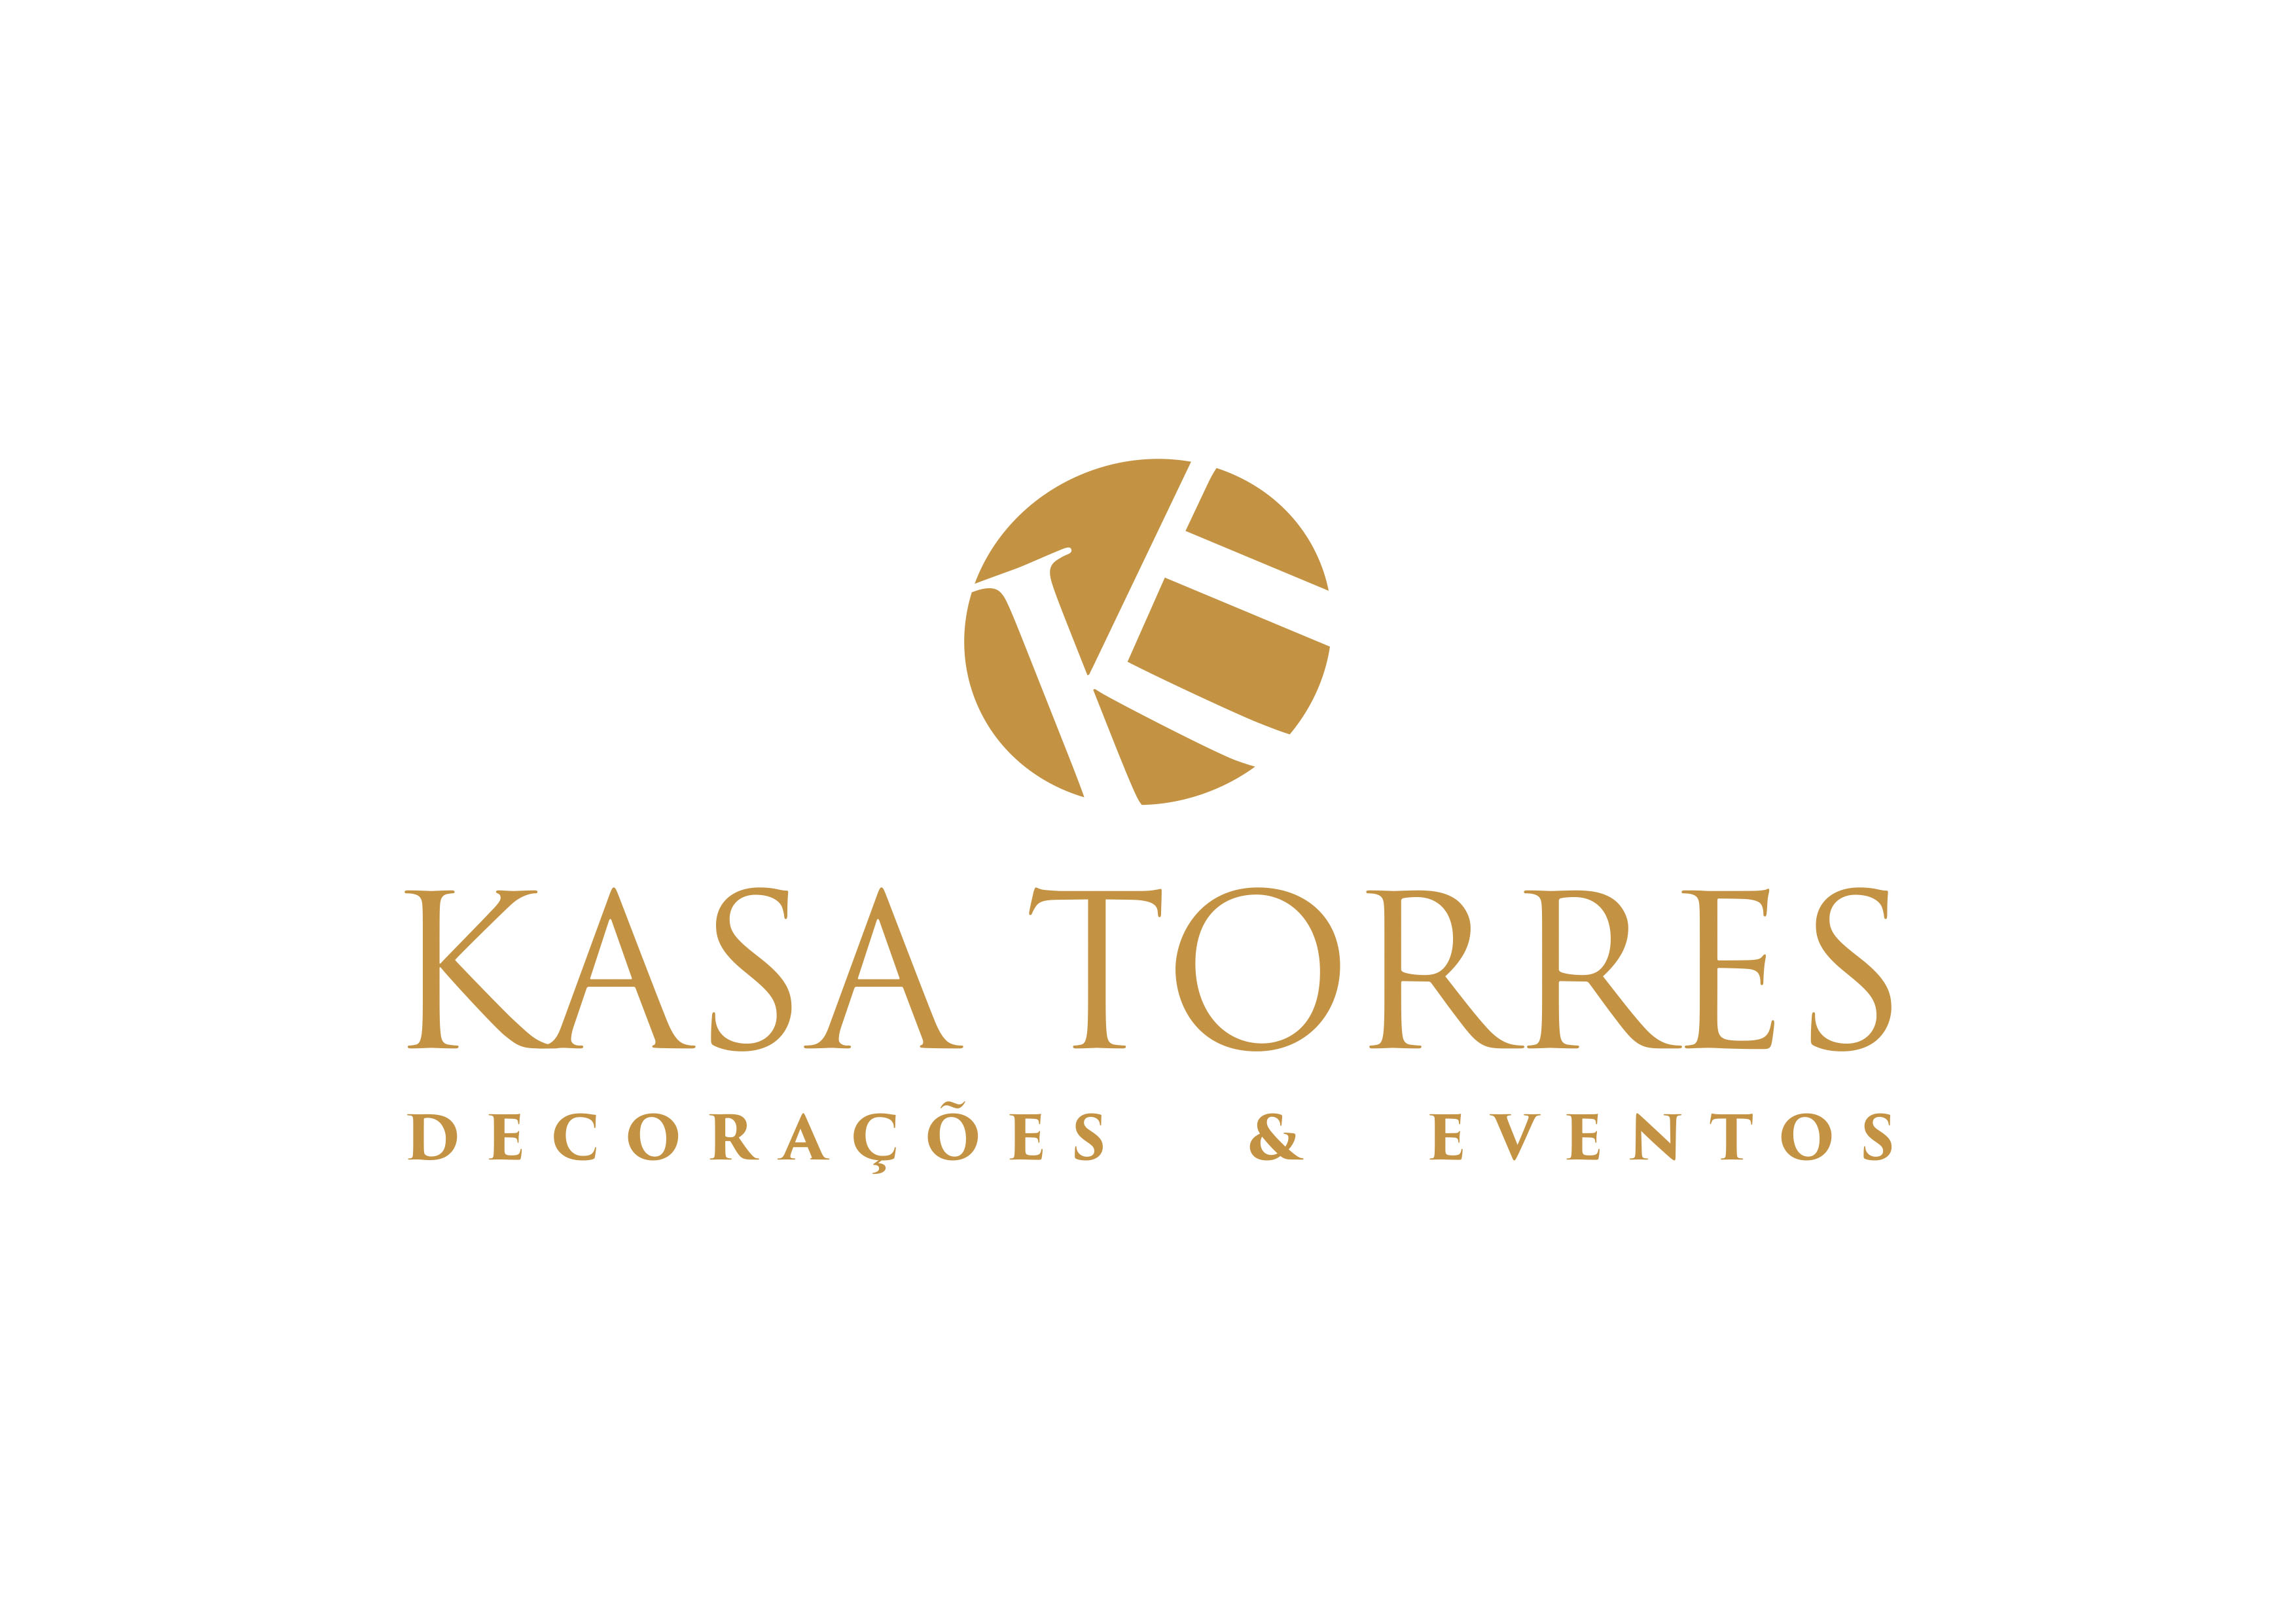 Kasa Torres Decorações & Eventos